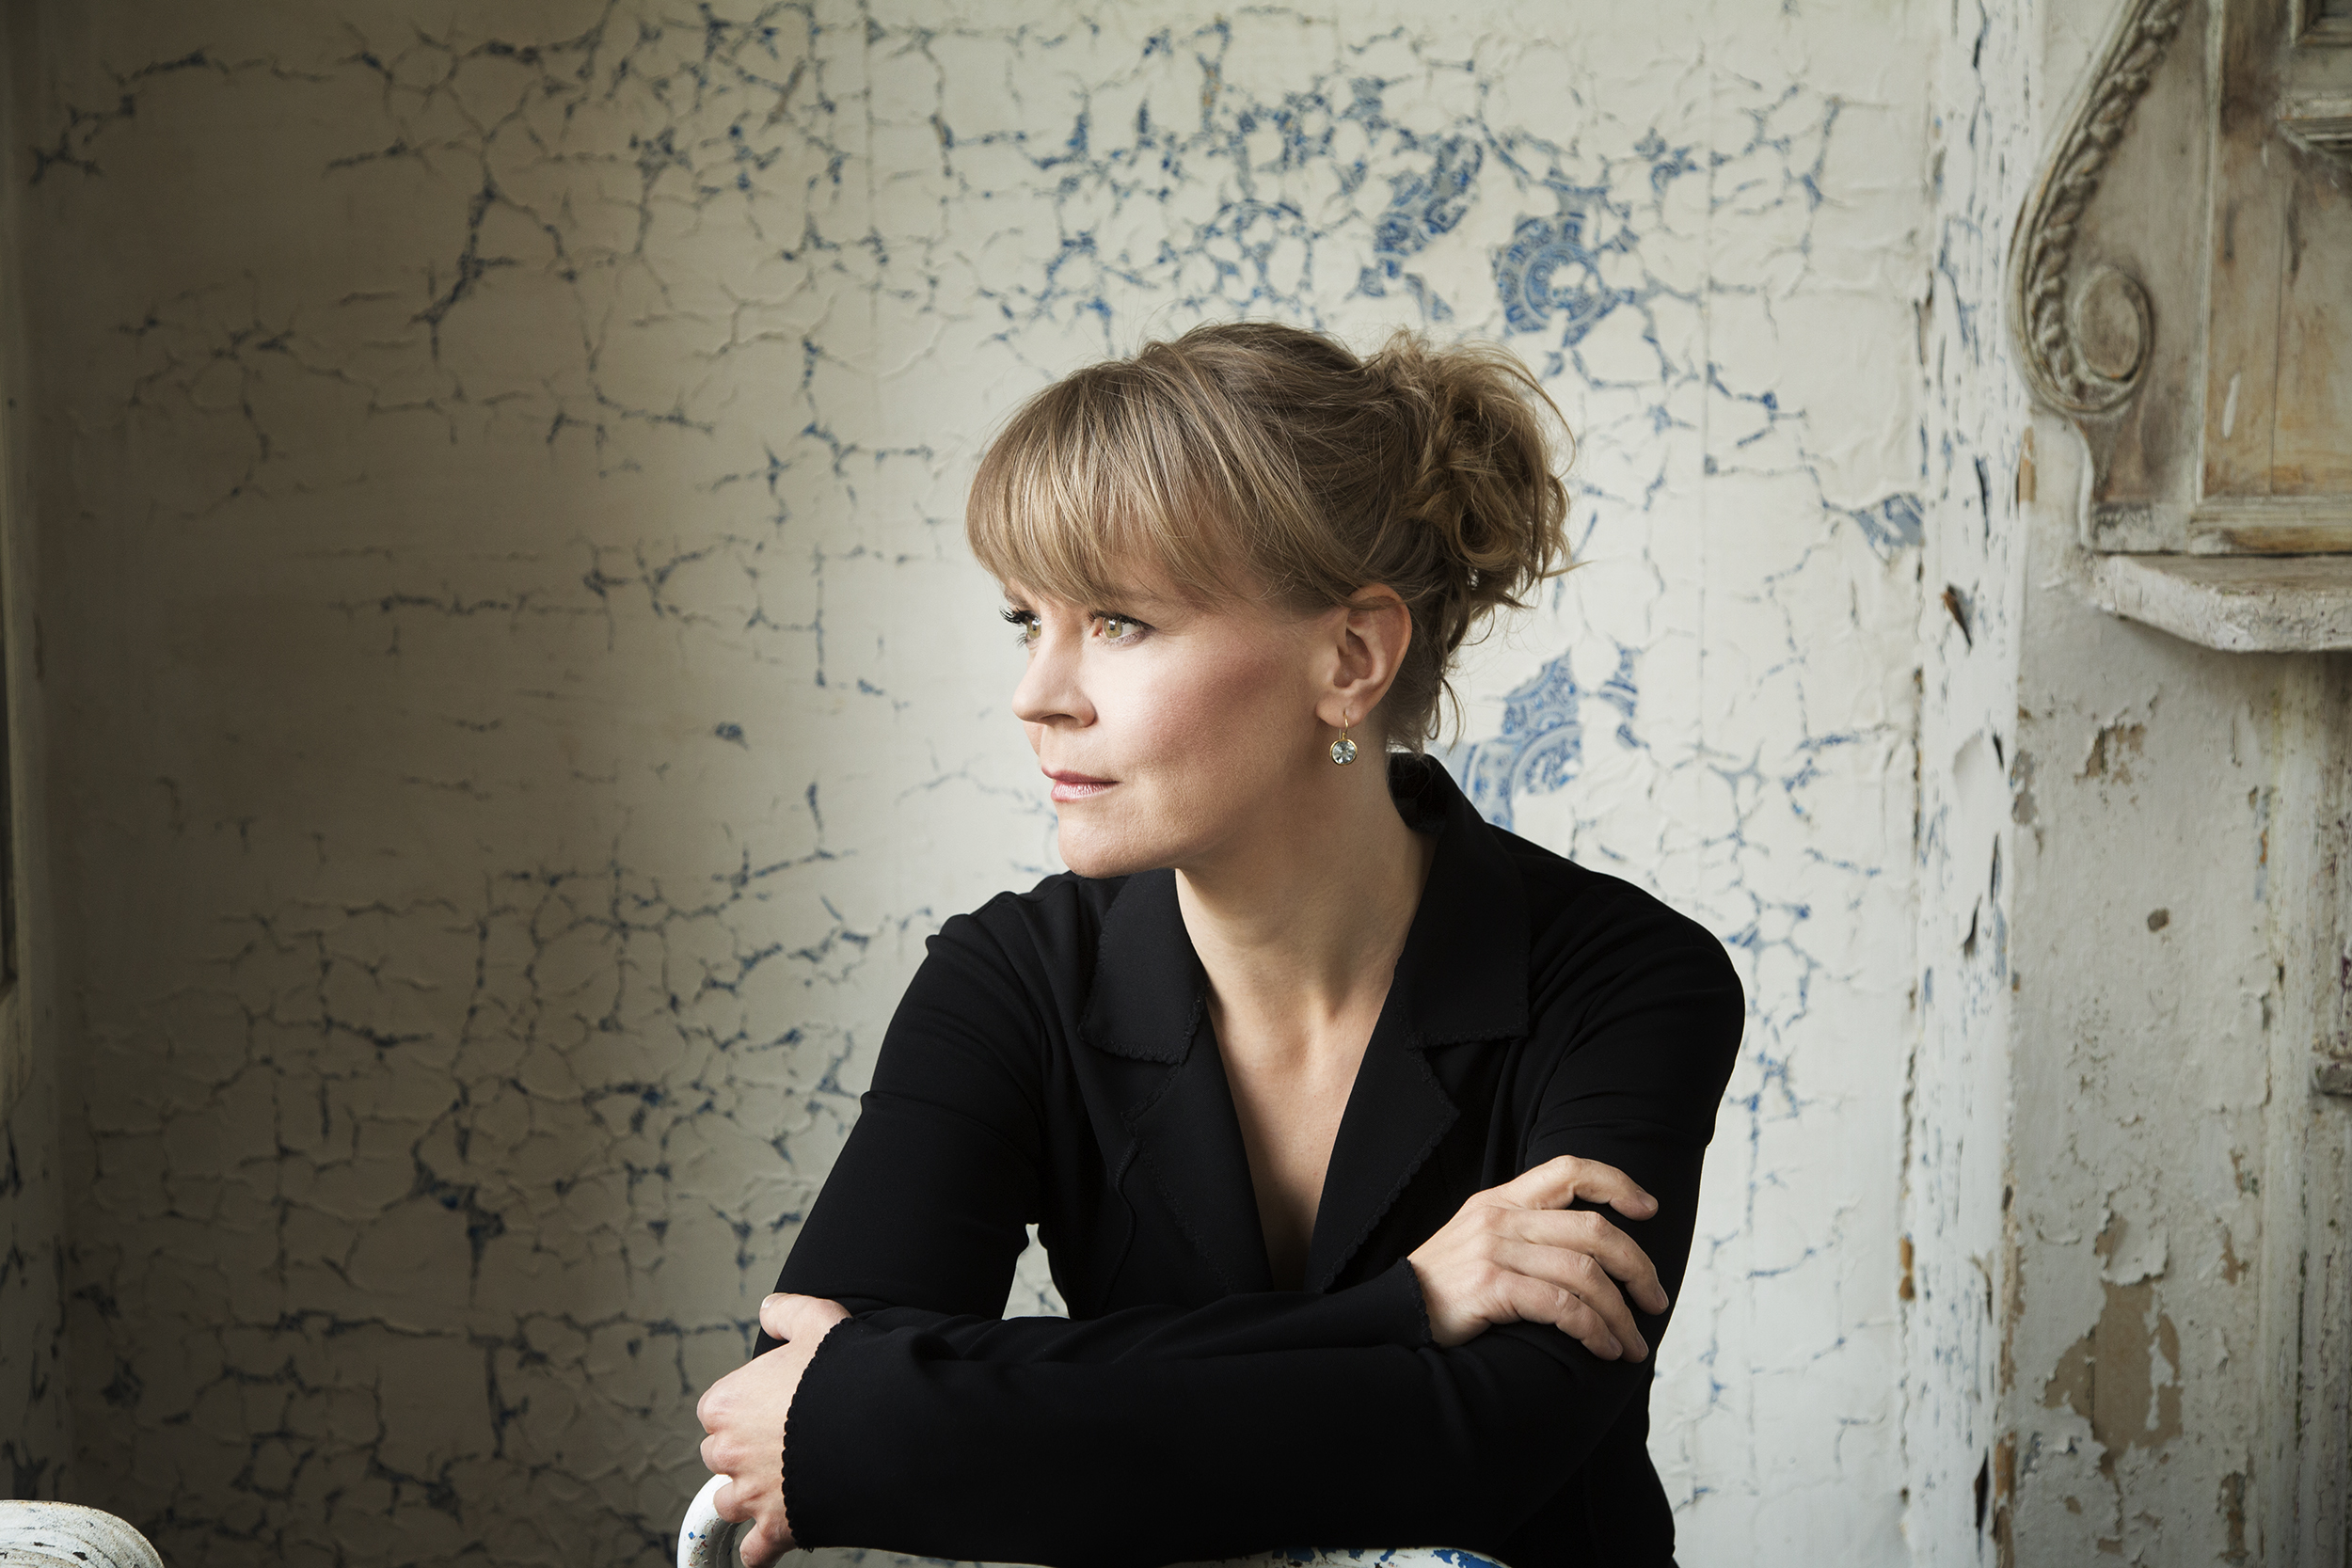  Dirigentin Susanna Mälkki stützt sich mit verschränkten Armen auf eine Stuhllehne und schaut zur Seite